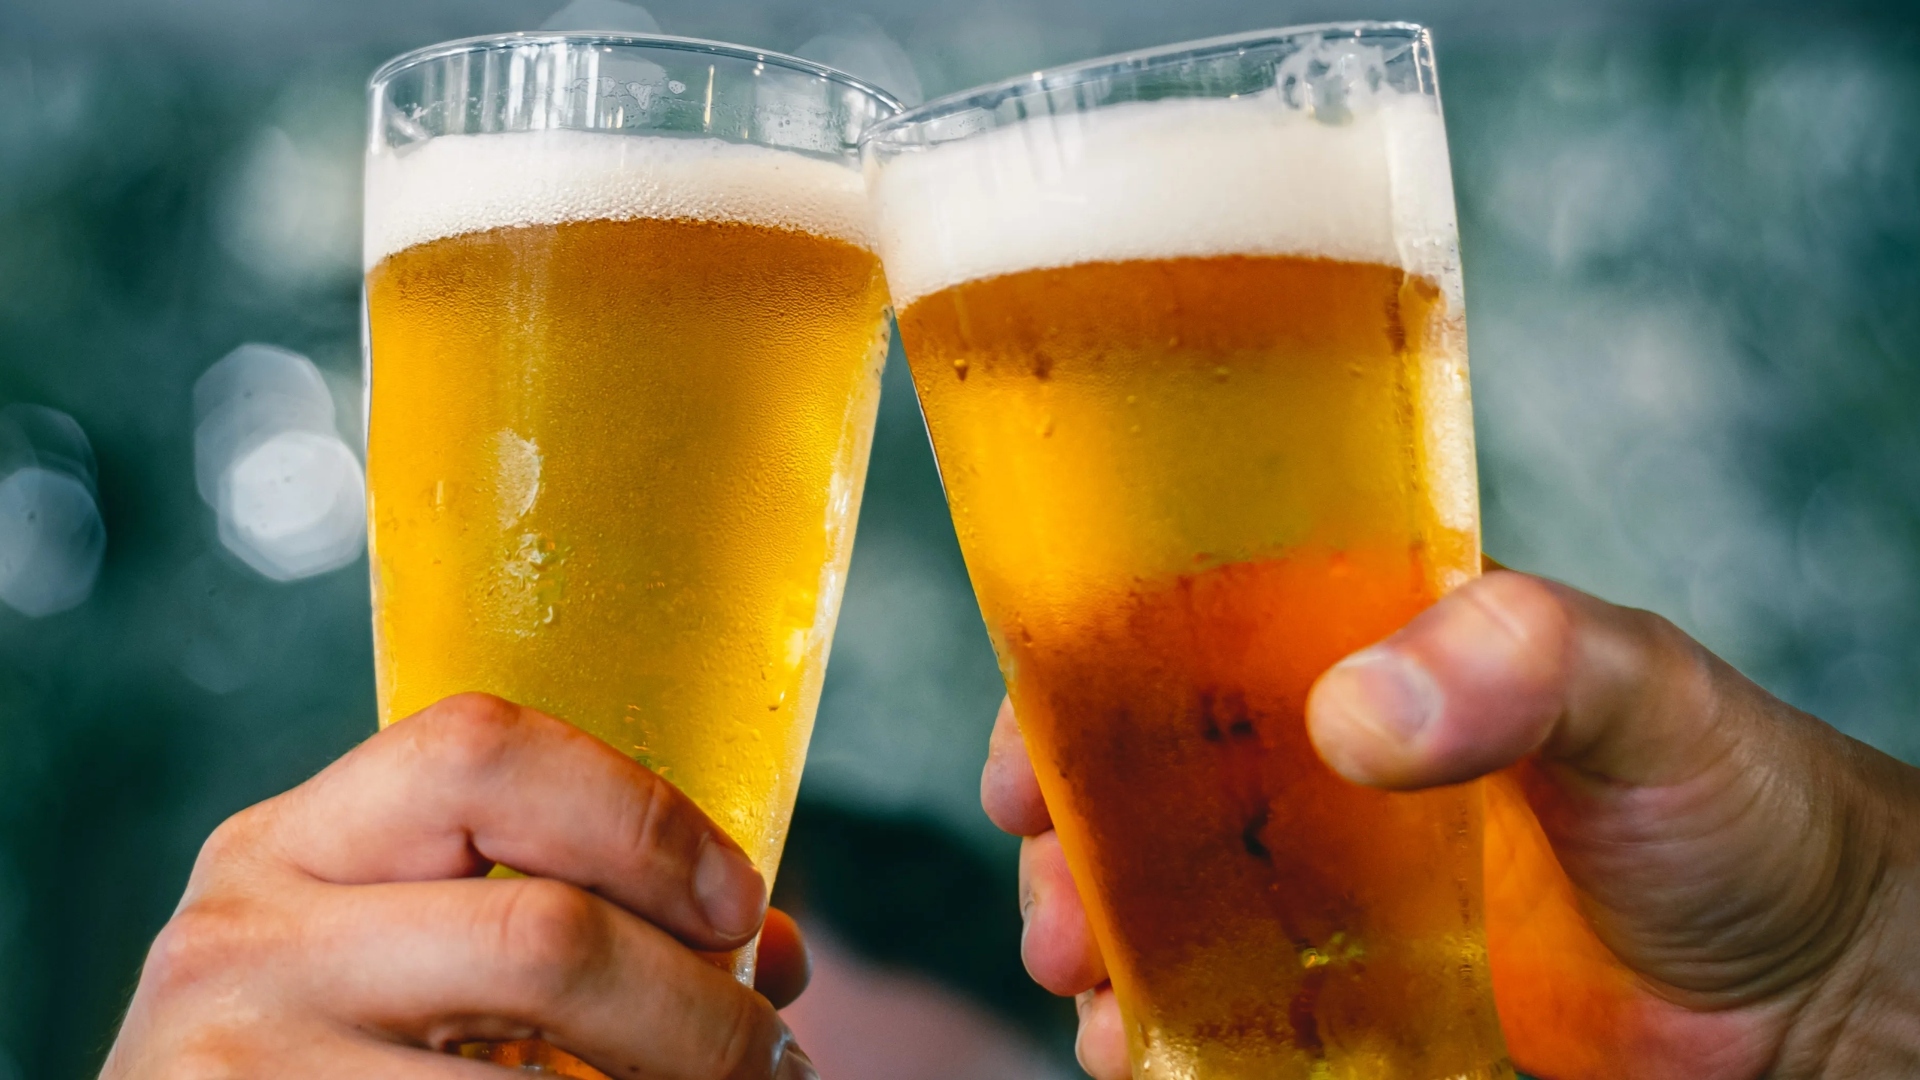 En cuanto a las bebidas, la cerveza es el brebaje por excelencia para todos los juegos del Super Bowl. El segundo lugar lo ocupan las sodas. Actualmente, Modelo Especial se posiciona como la marca de cervezas más vendida en USA, seguida de Bud Light.